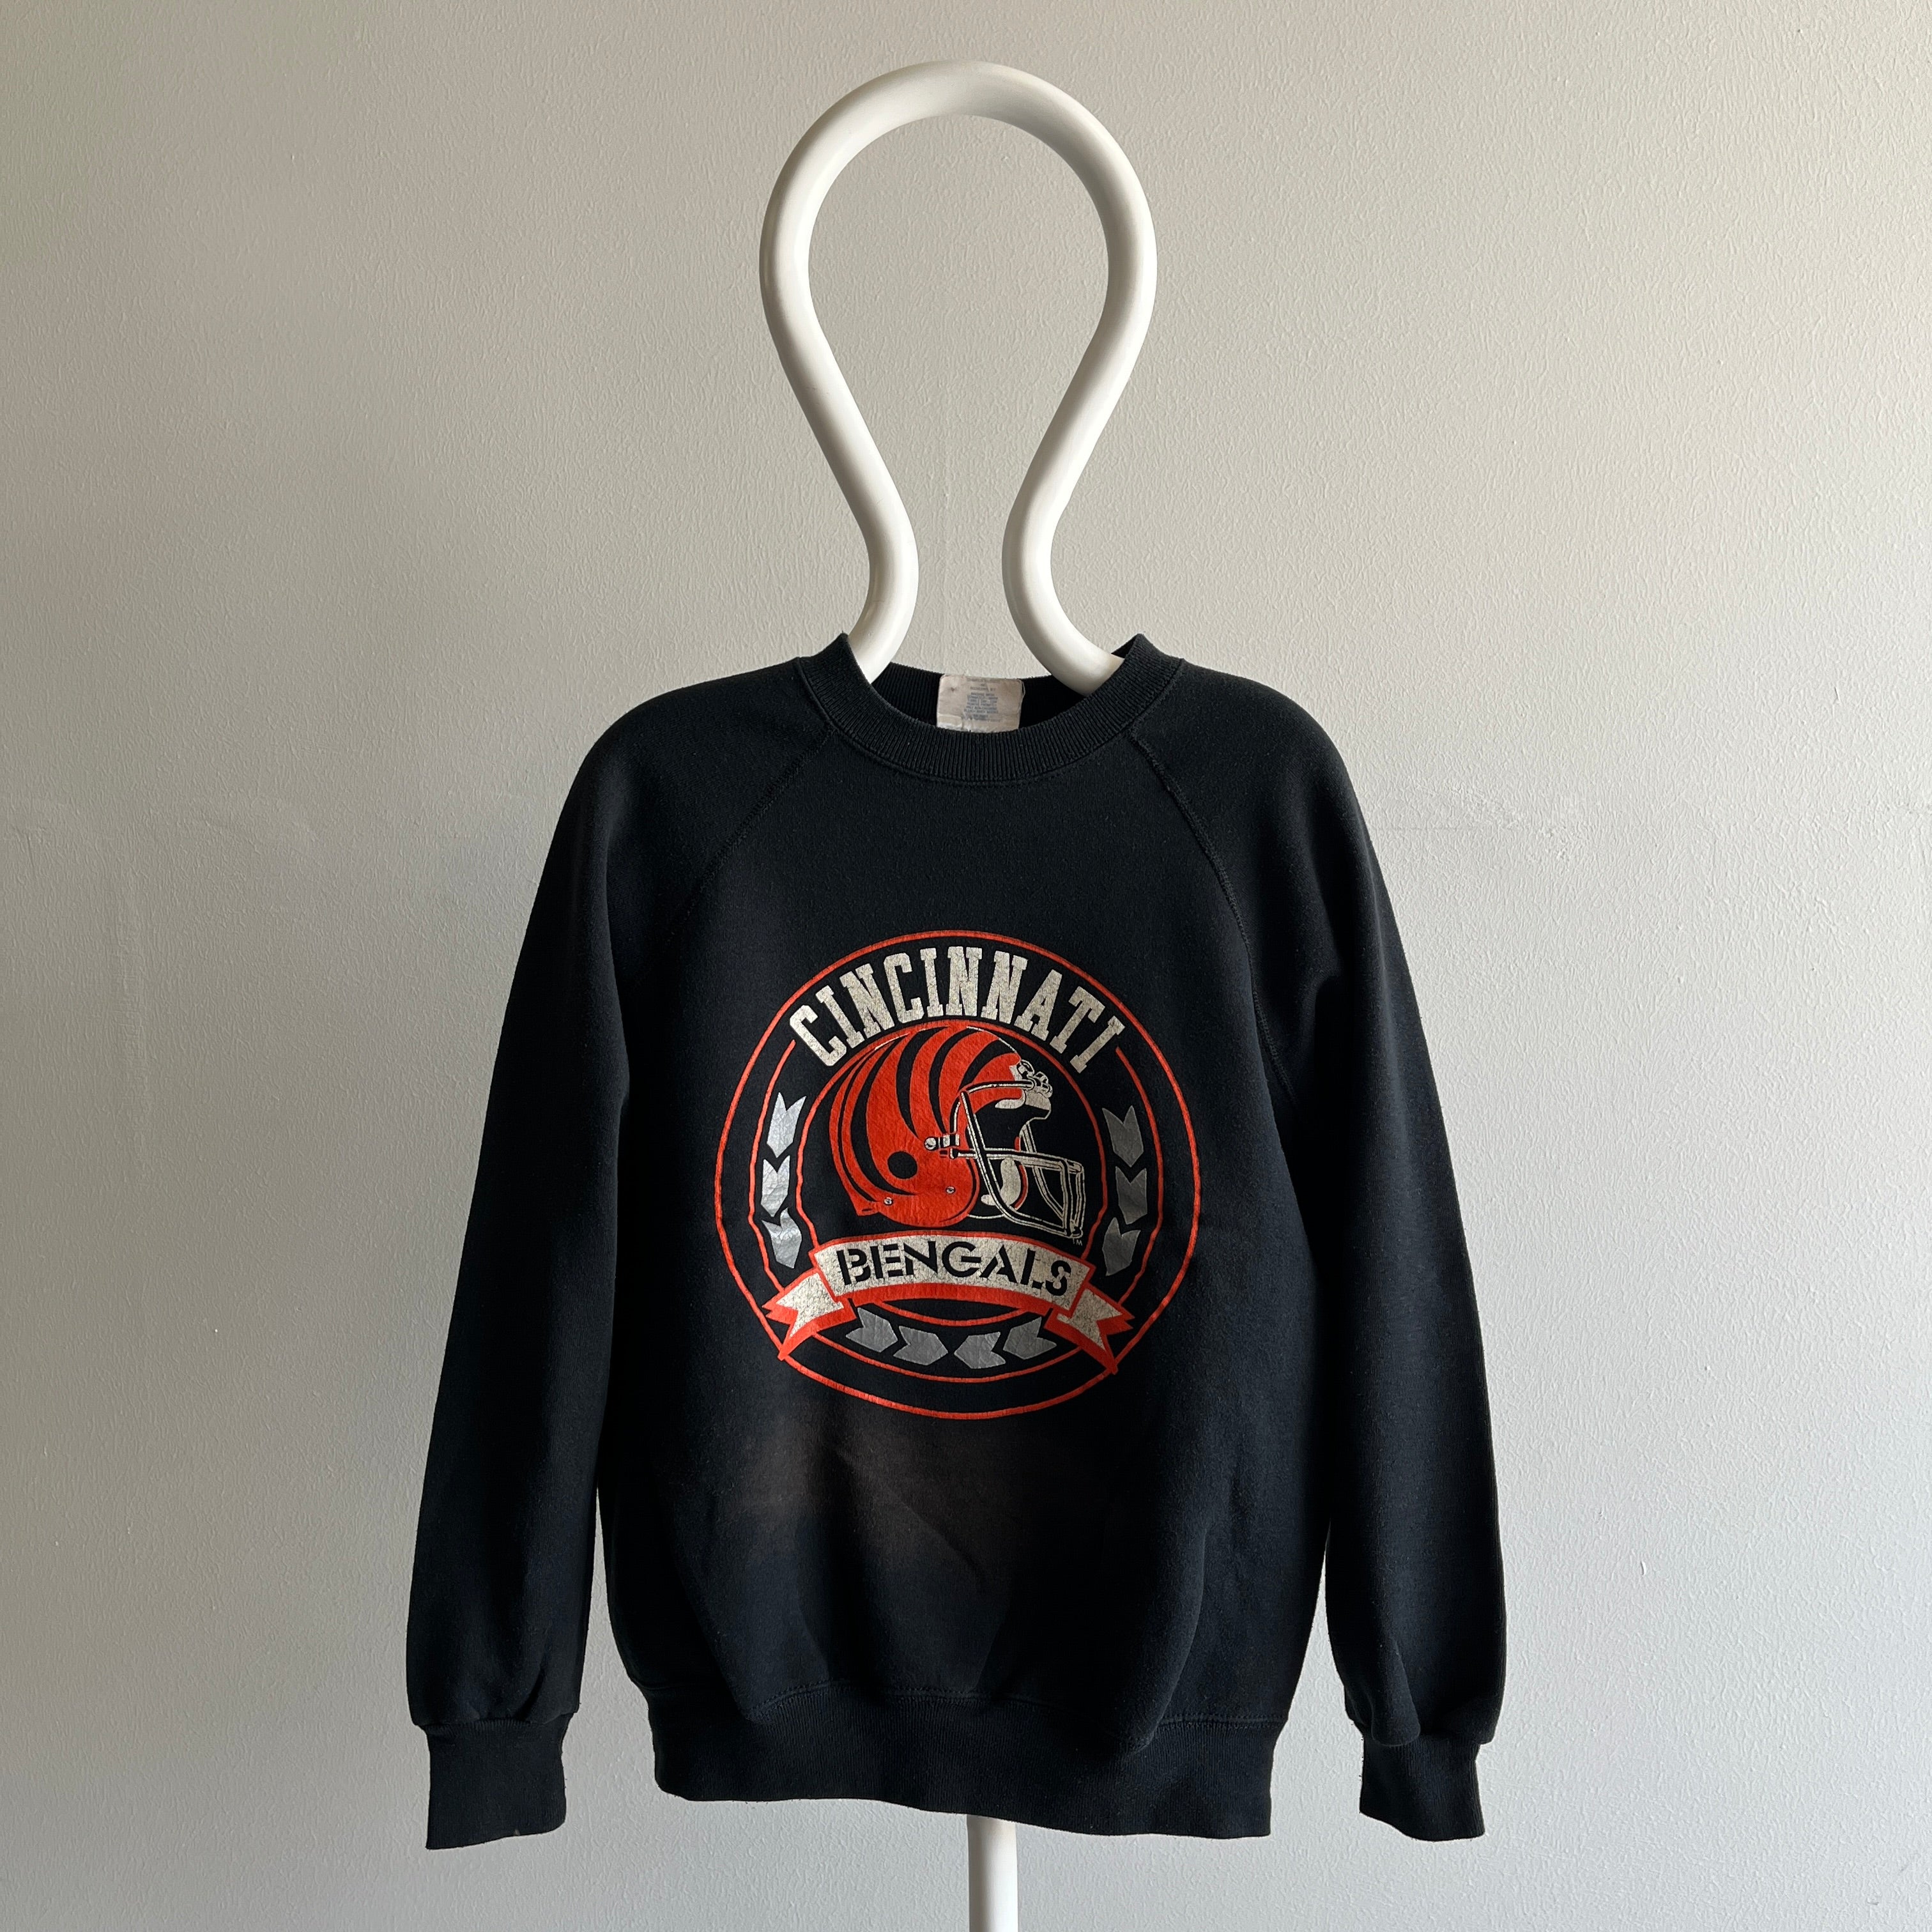 bengals sweatshirt vintage